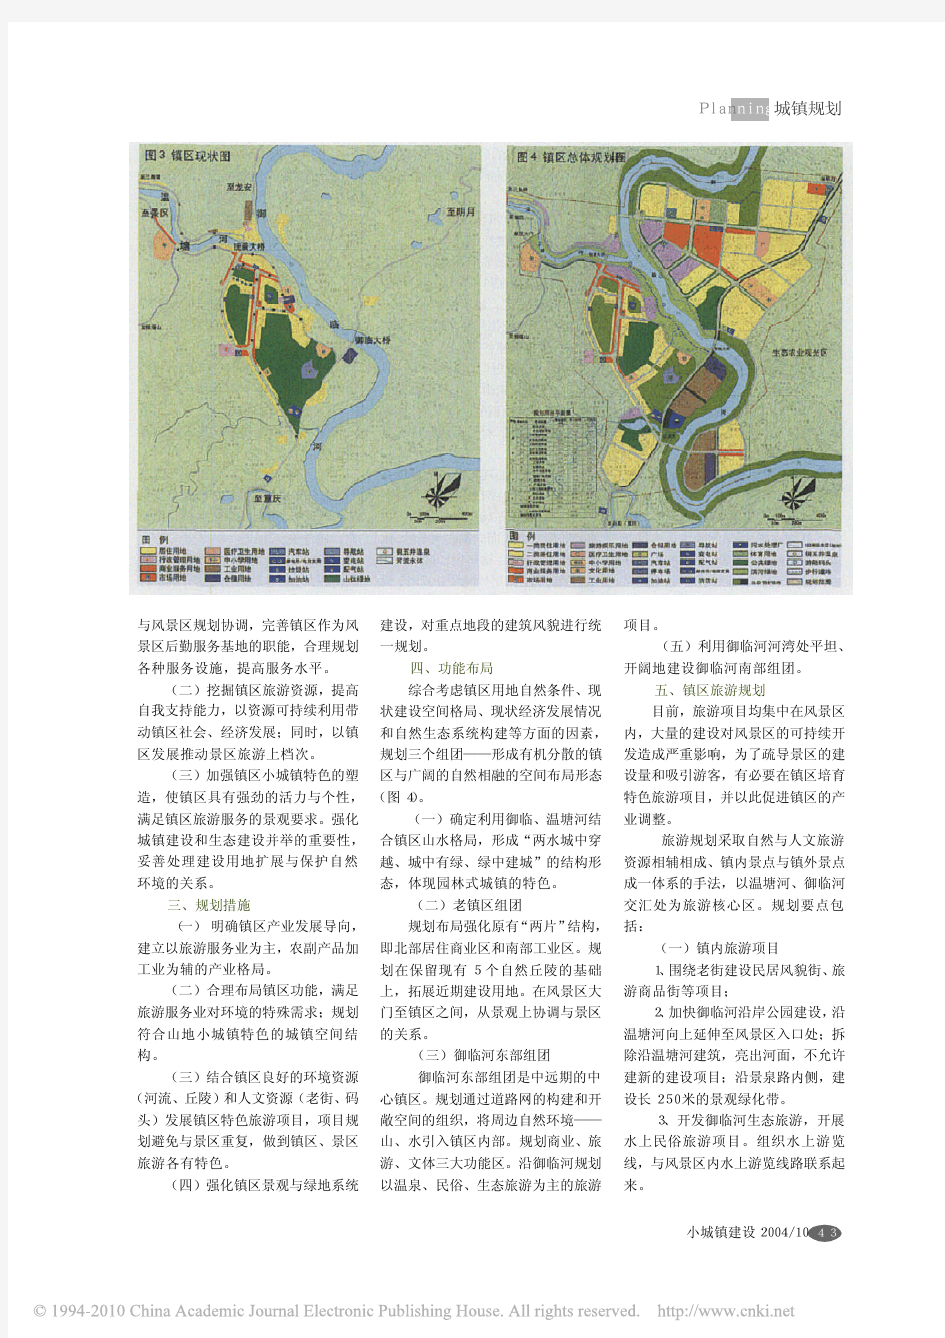 邻近风景区的旅游型小城镇总体规划初探_以重庆市统景镇为例